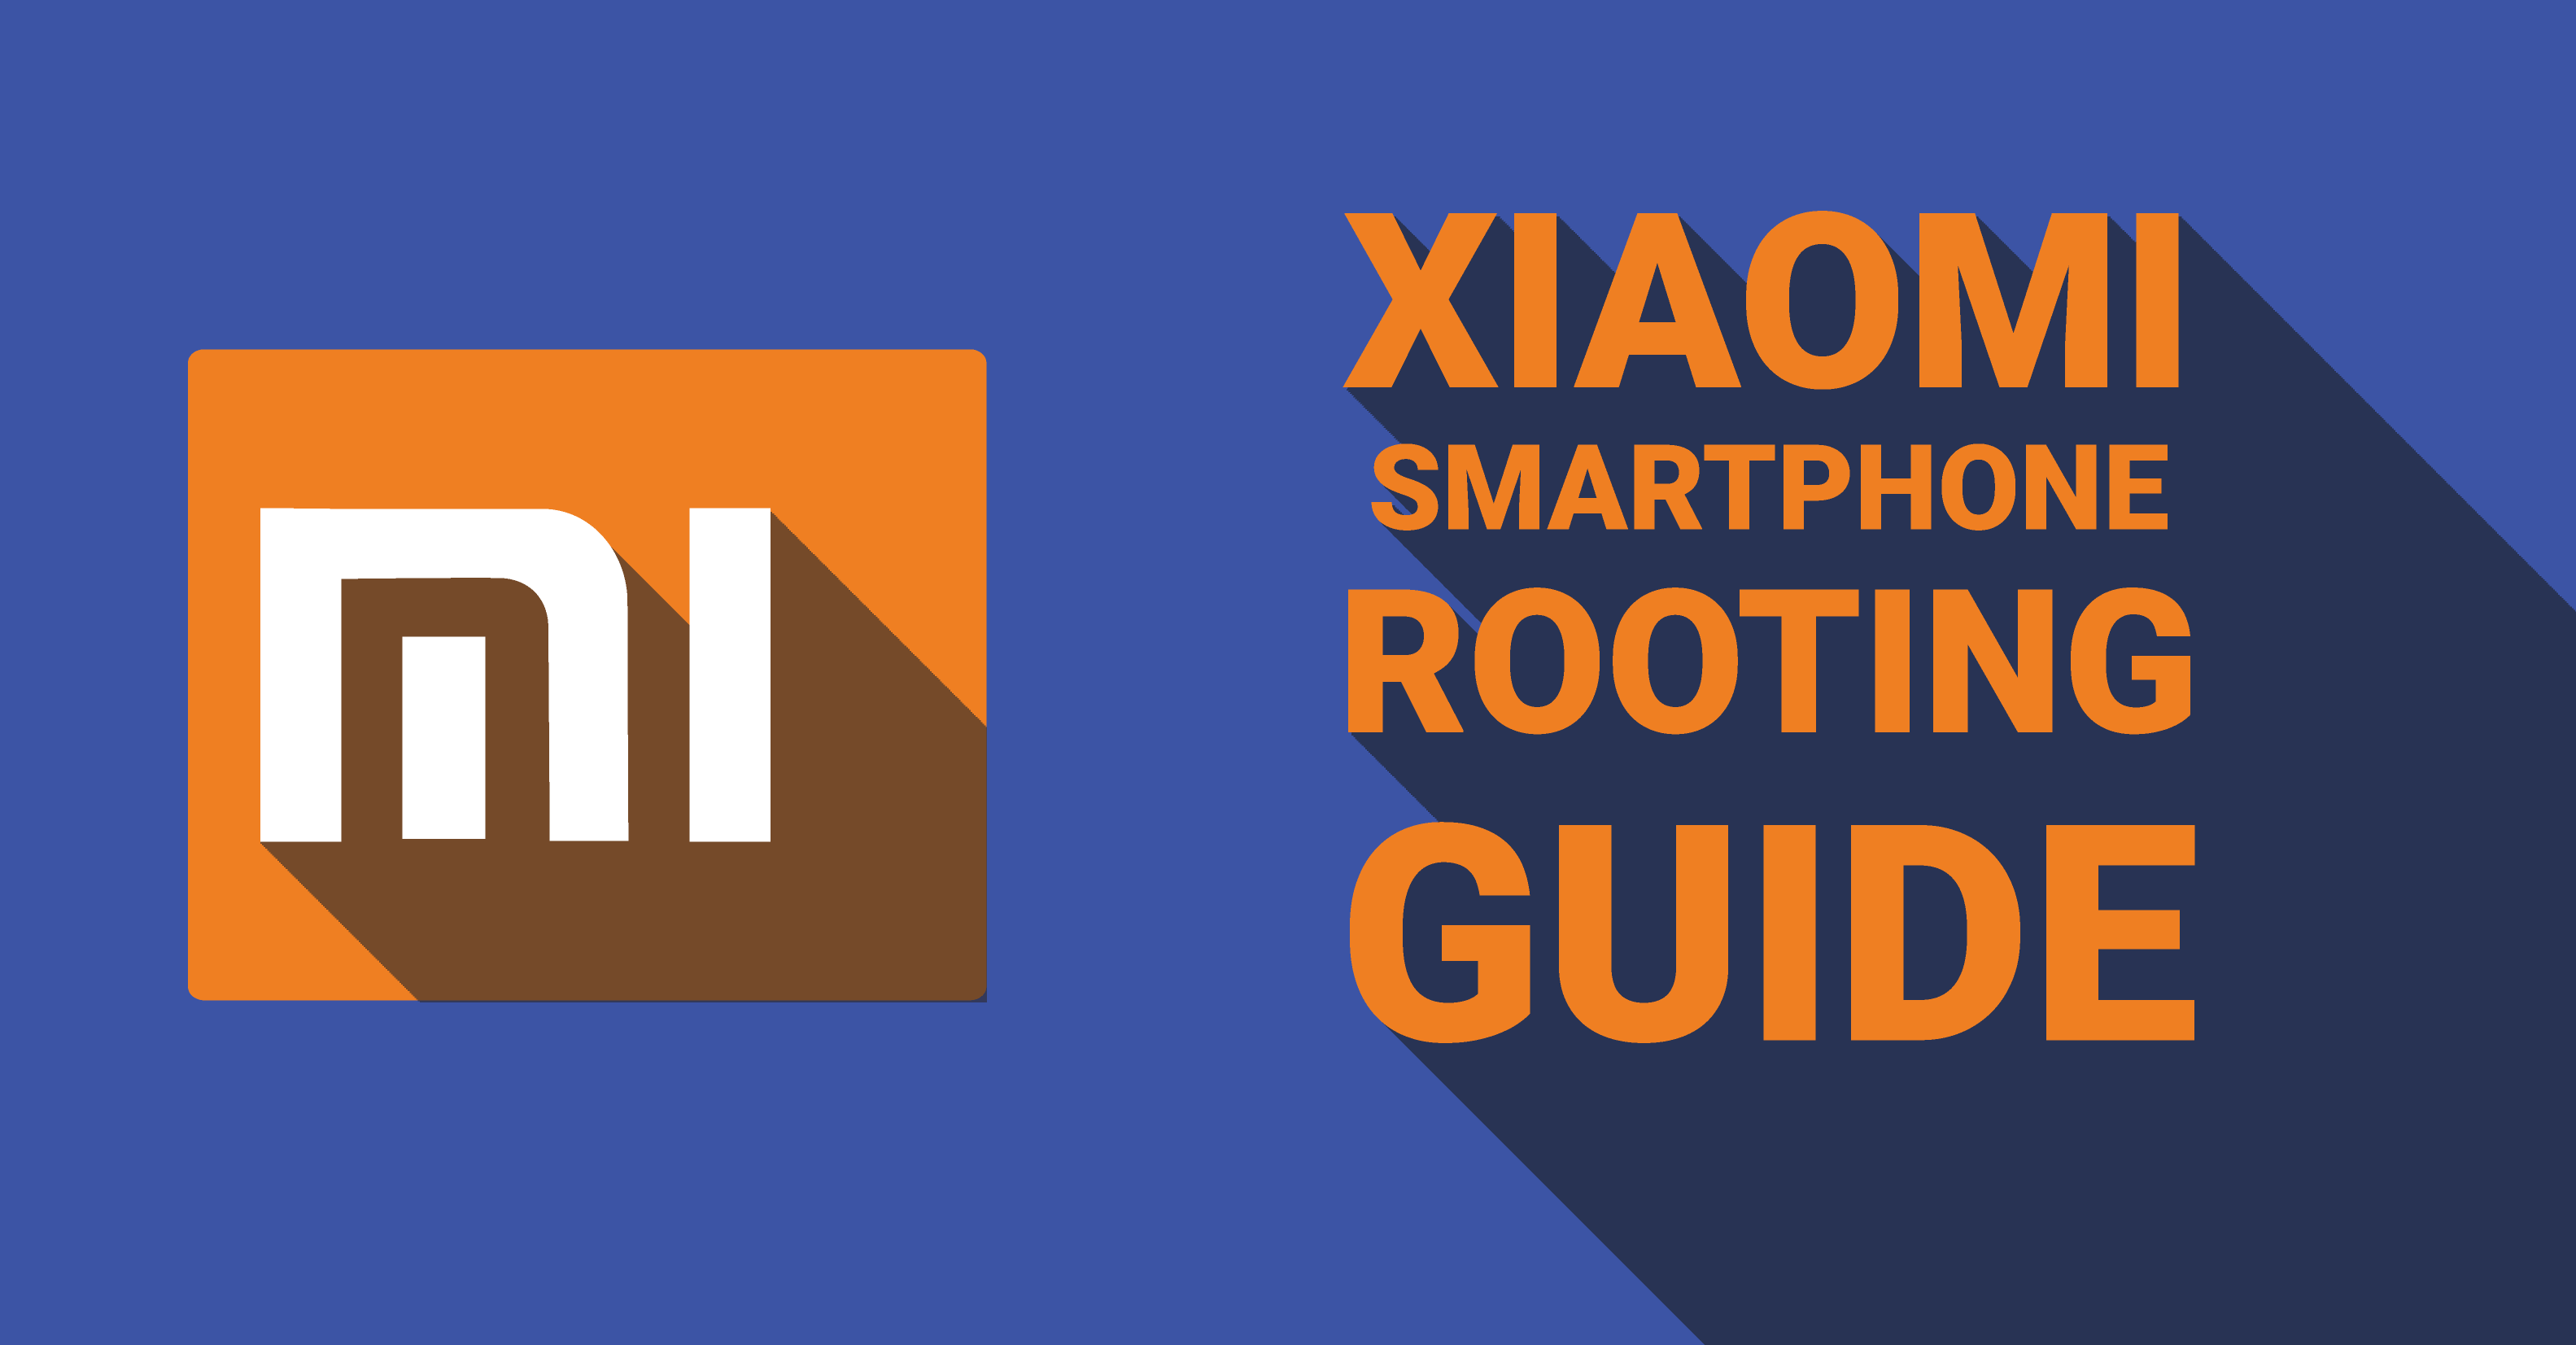 How to root xiaomi smartphones androtrends